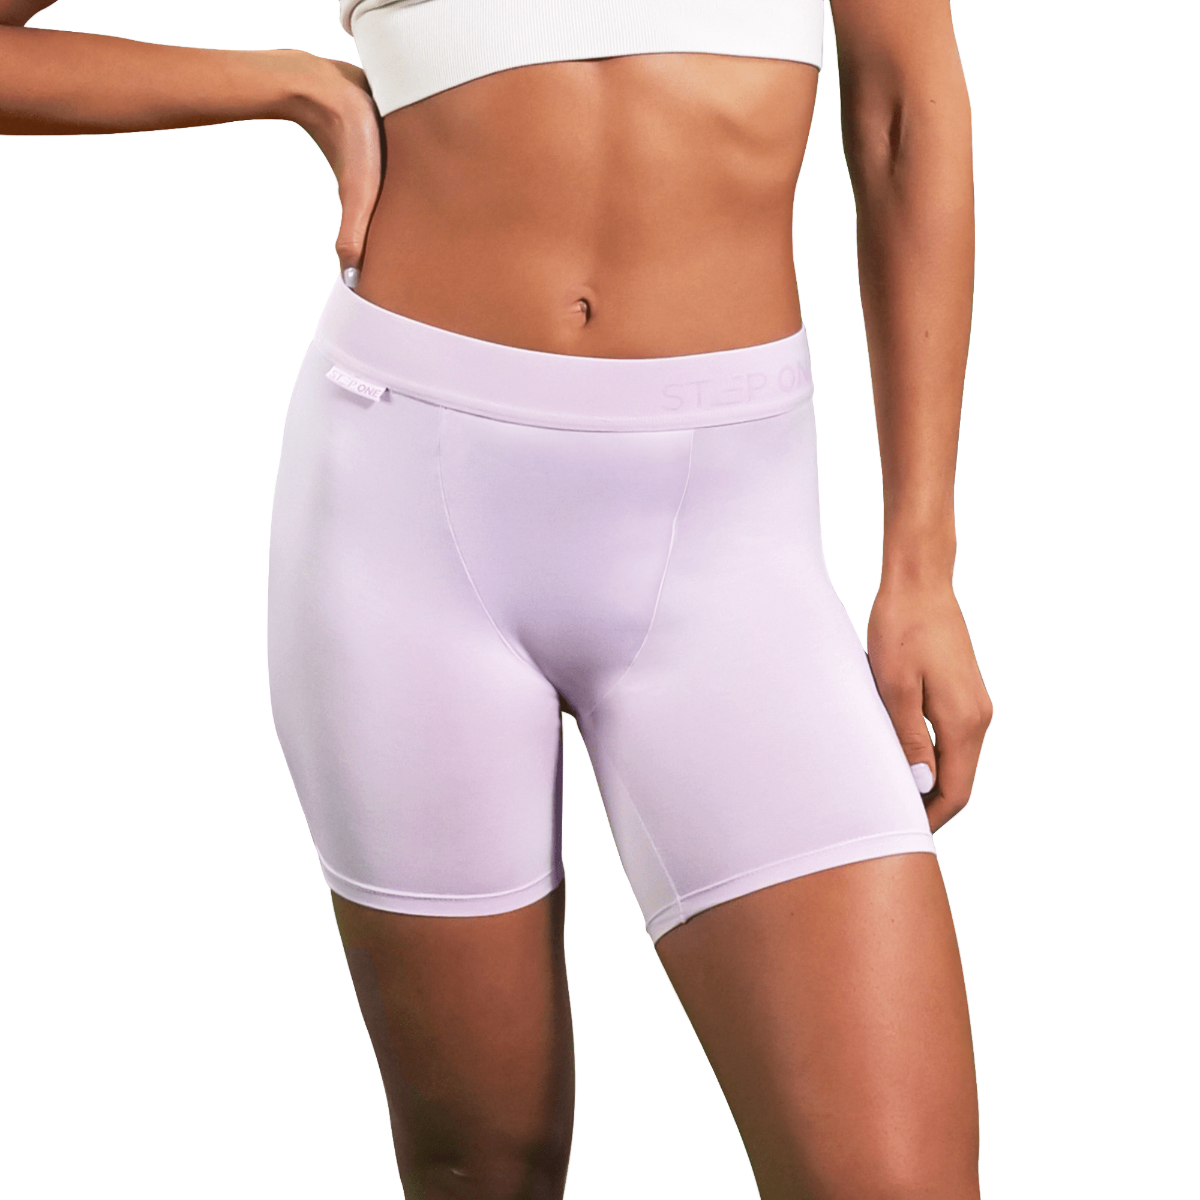 Purple Body Short Underwear for Women